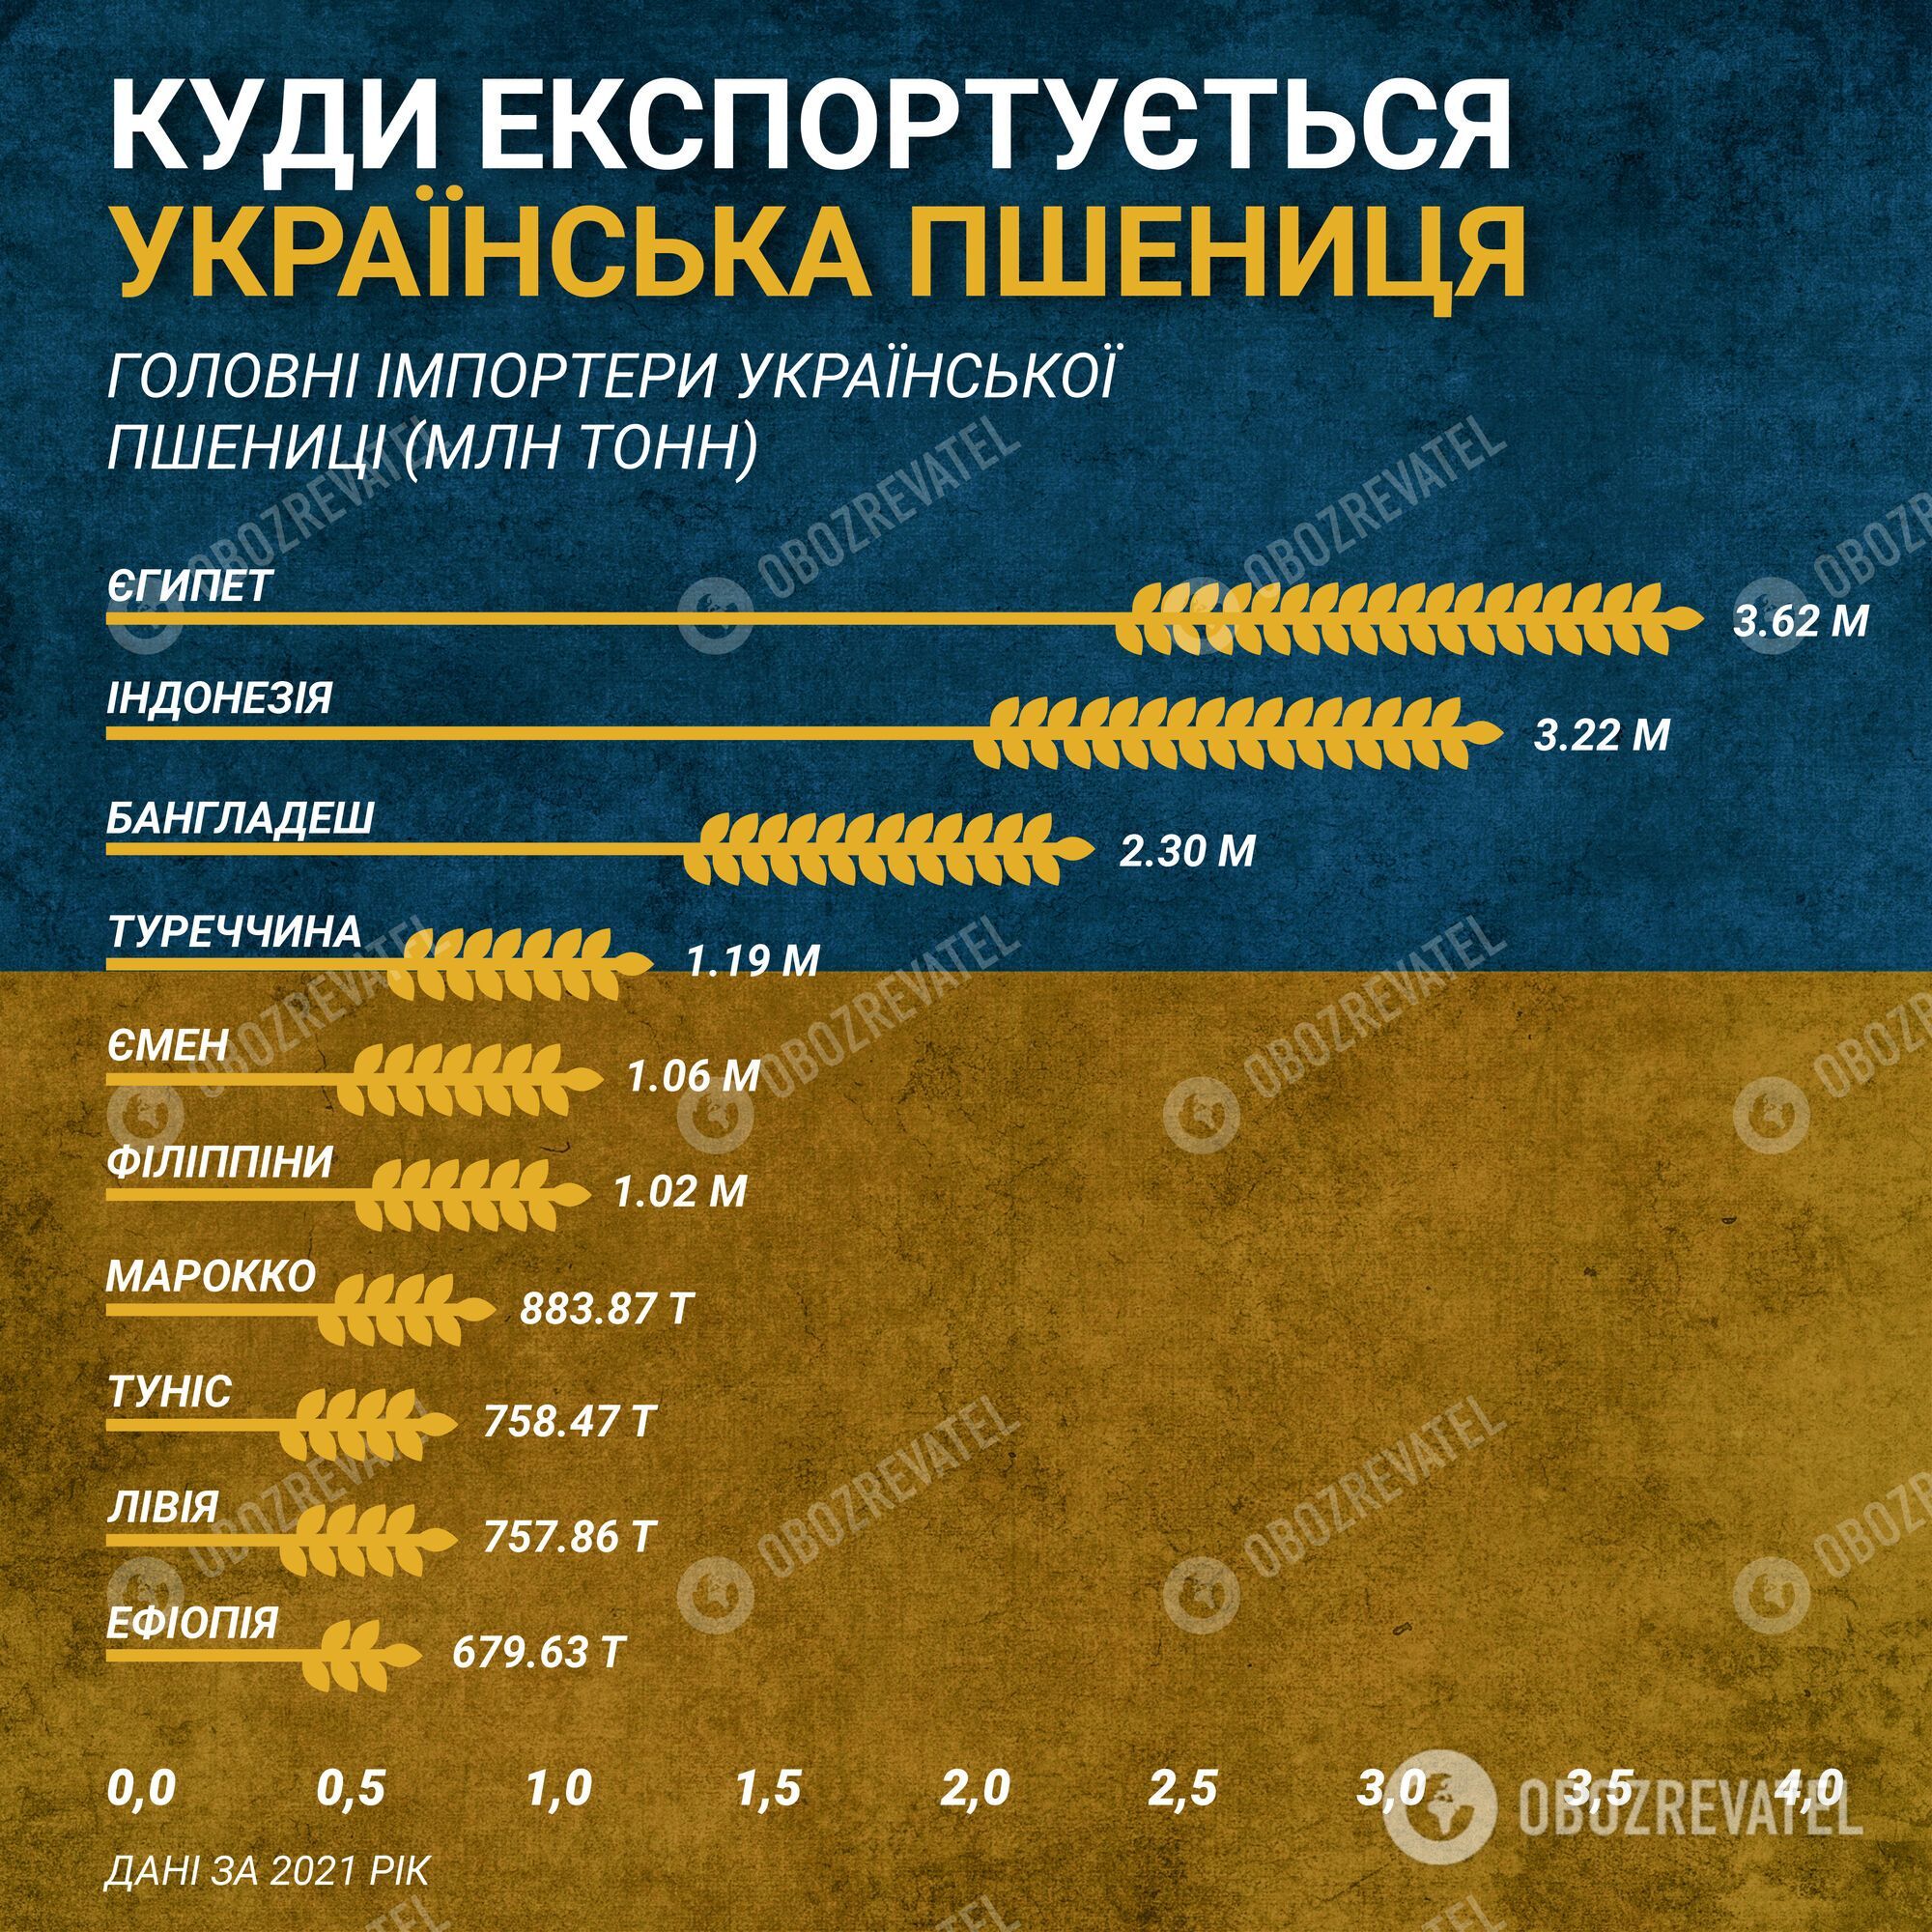 Самые крупные покупатели украинской пшеницы